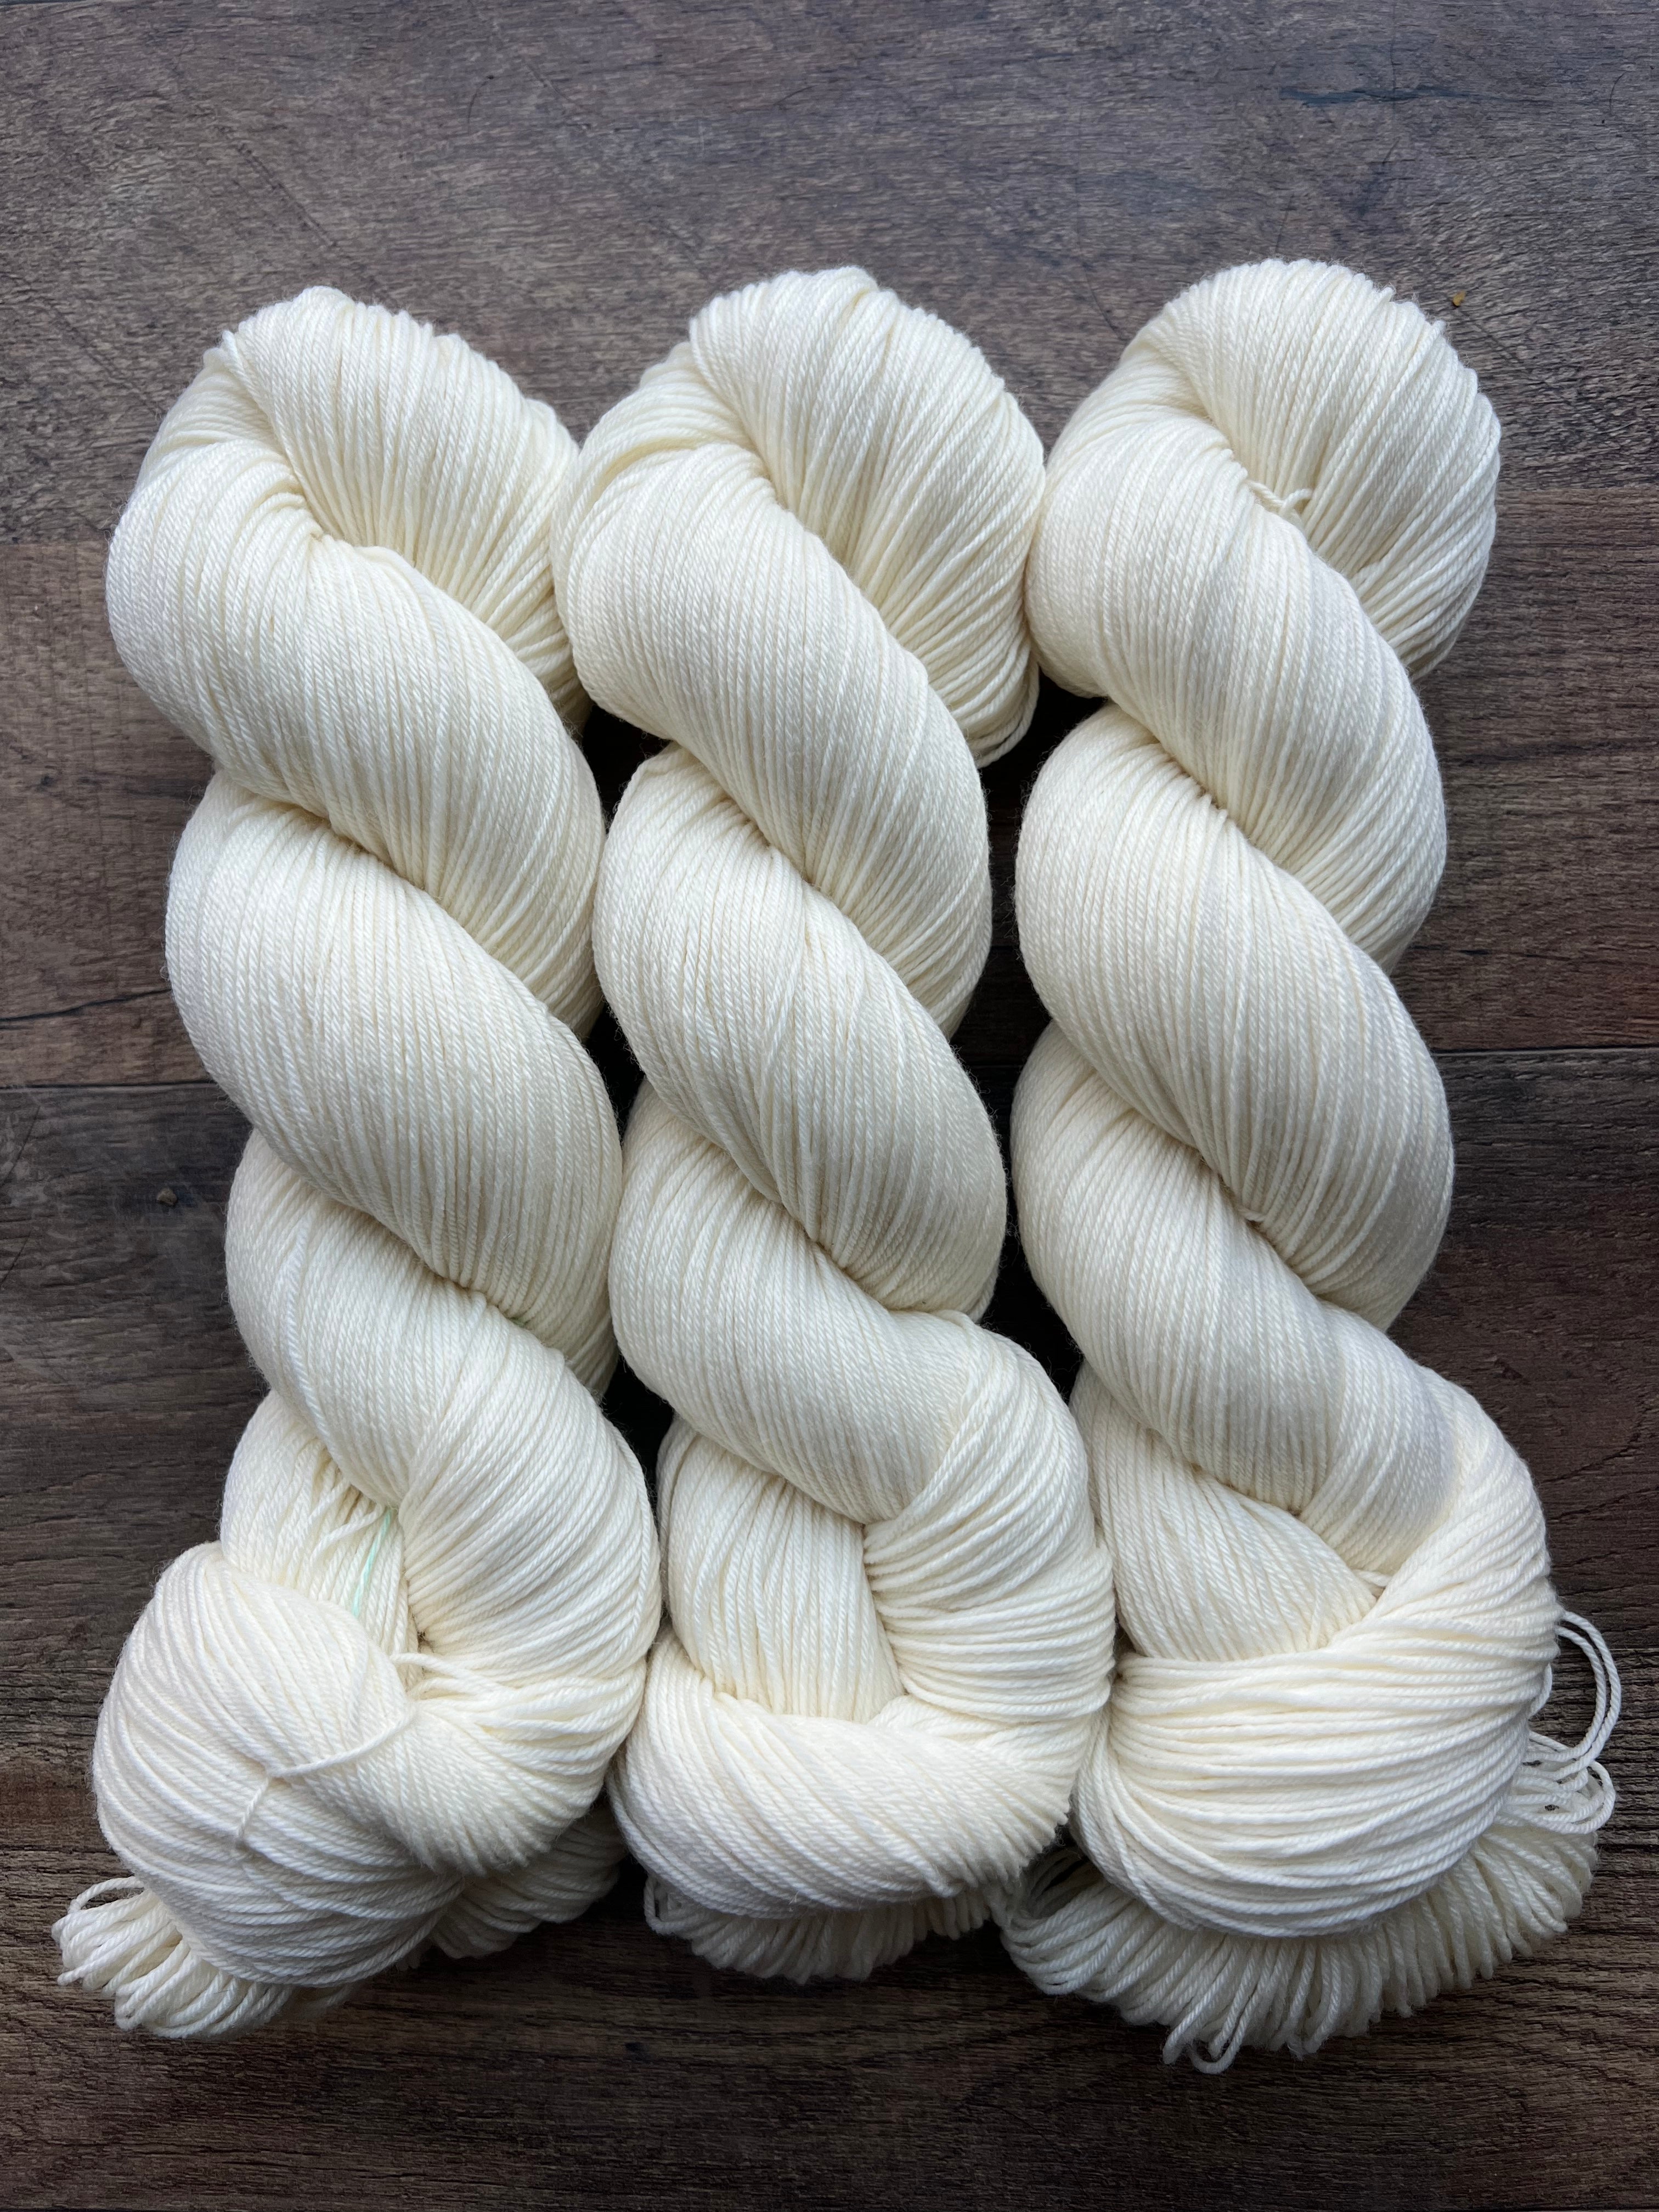 Grey-brown Undyed Wool Yarn in Cone - 500g/550m